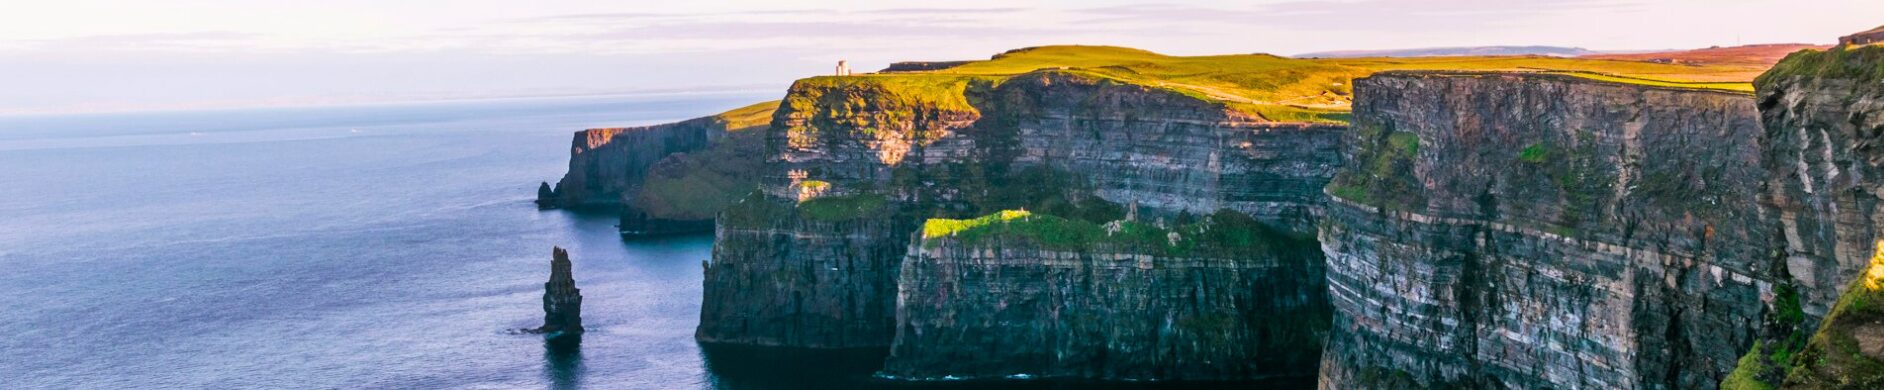 Irlande+Voyage+Sur-Mesure - Les matins du monde